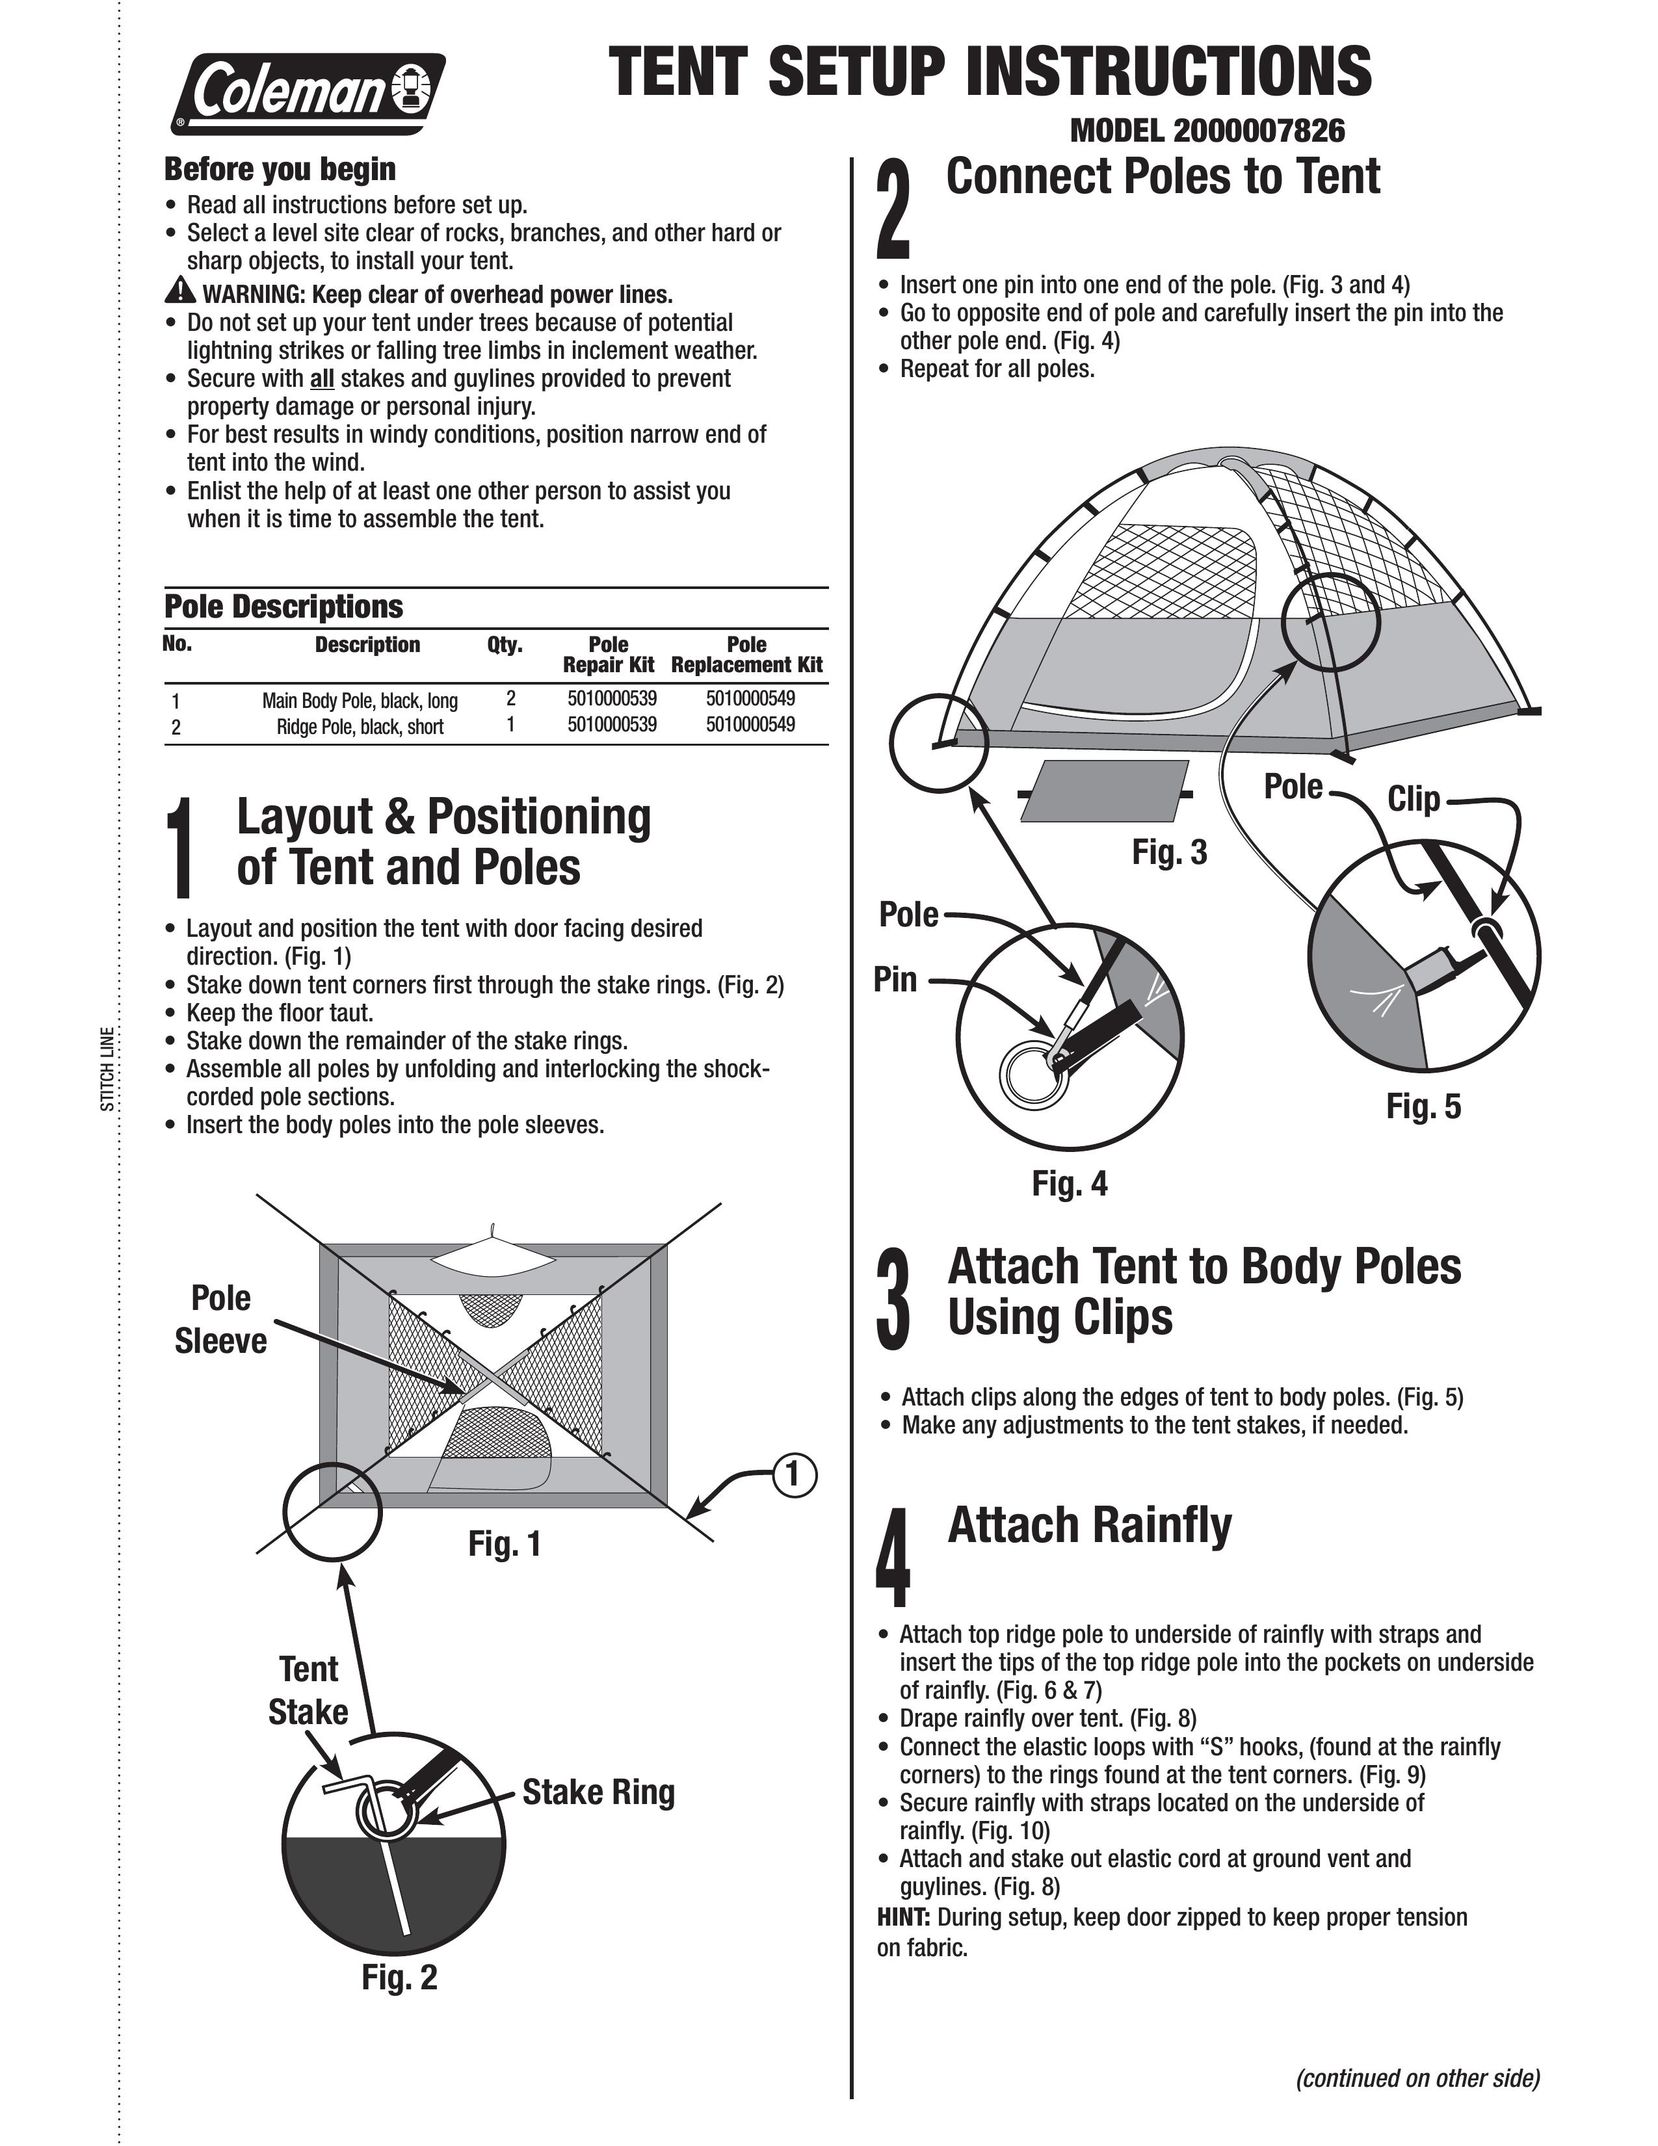 Coleman 2000007826 Tent User Manual